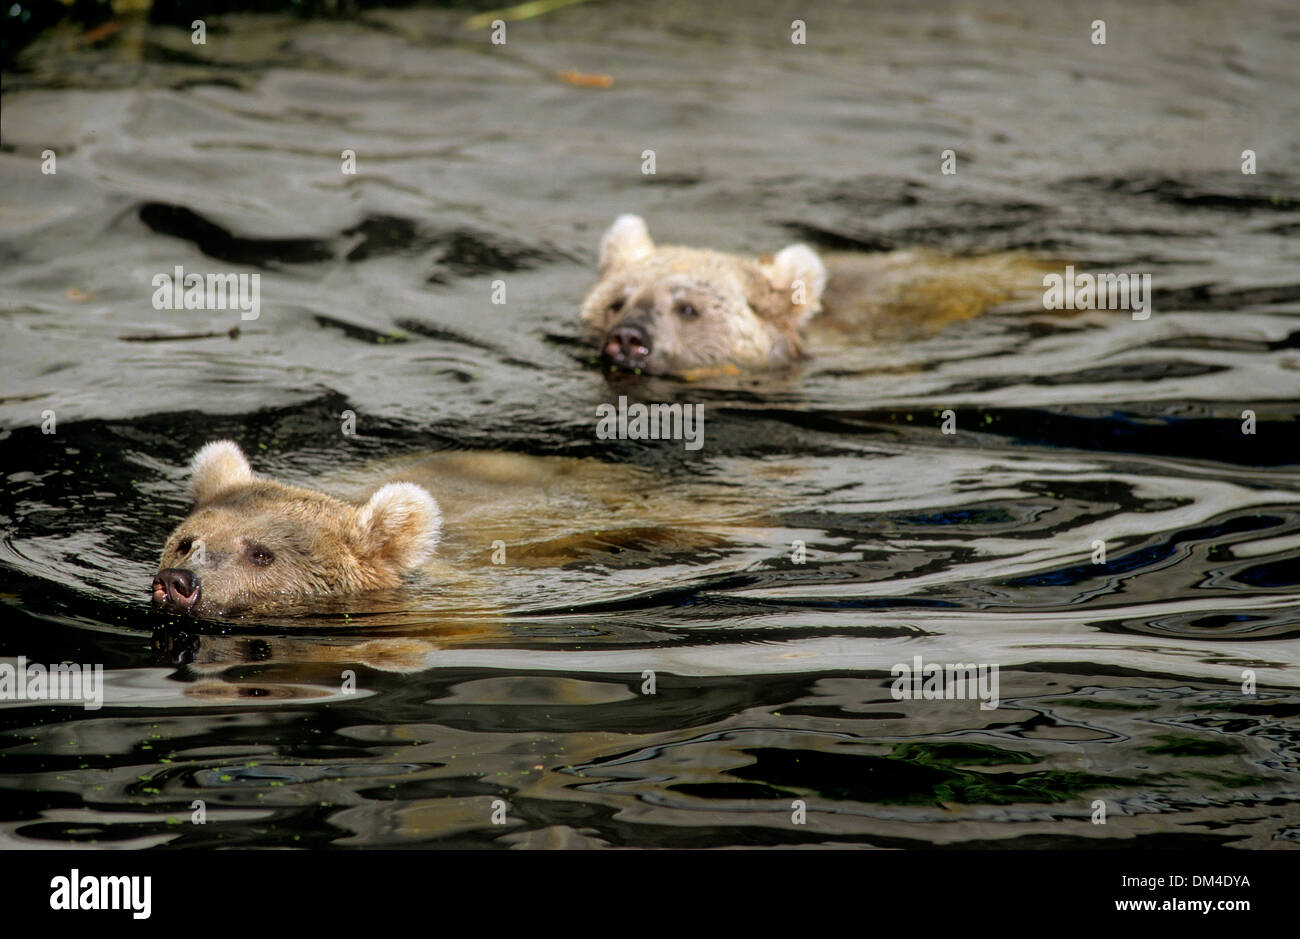 Syrian brown bear (Ursus arctos syriacus), Syrische Braunbären schwimmend, Syrischer Braunbär (Ursus arctos syriacus) Stock Photo